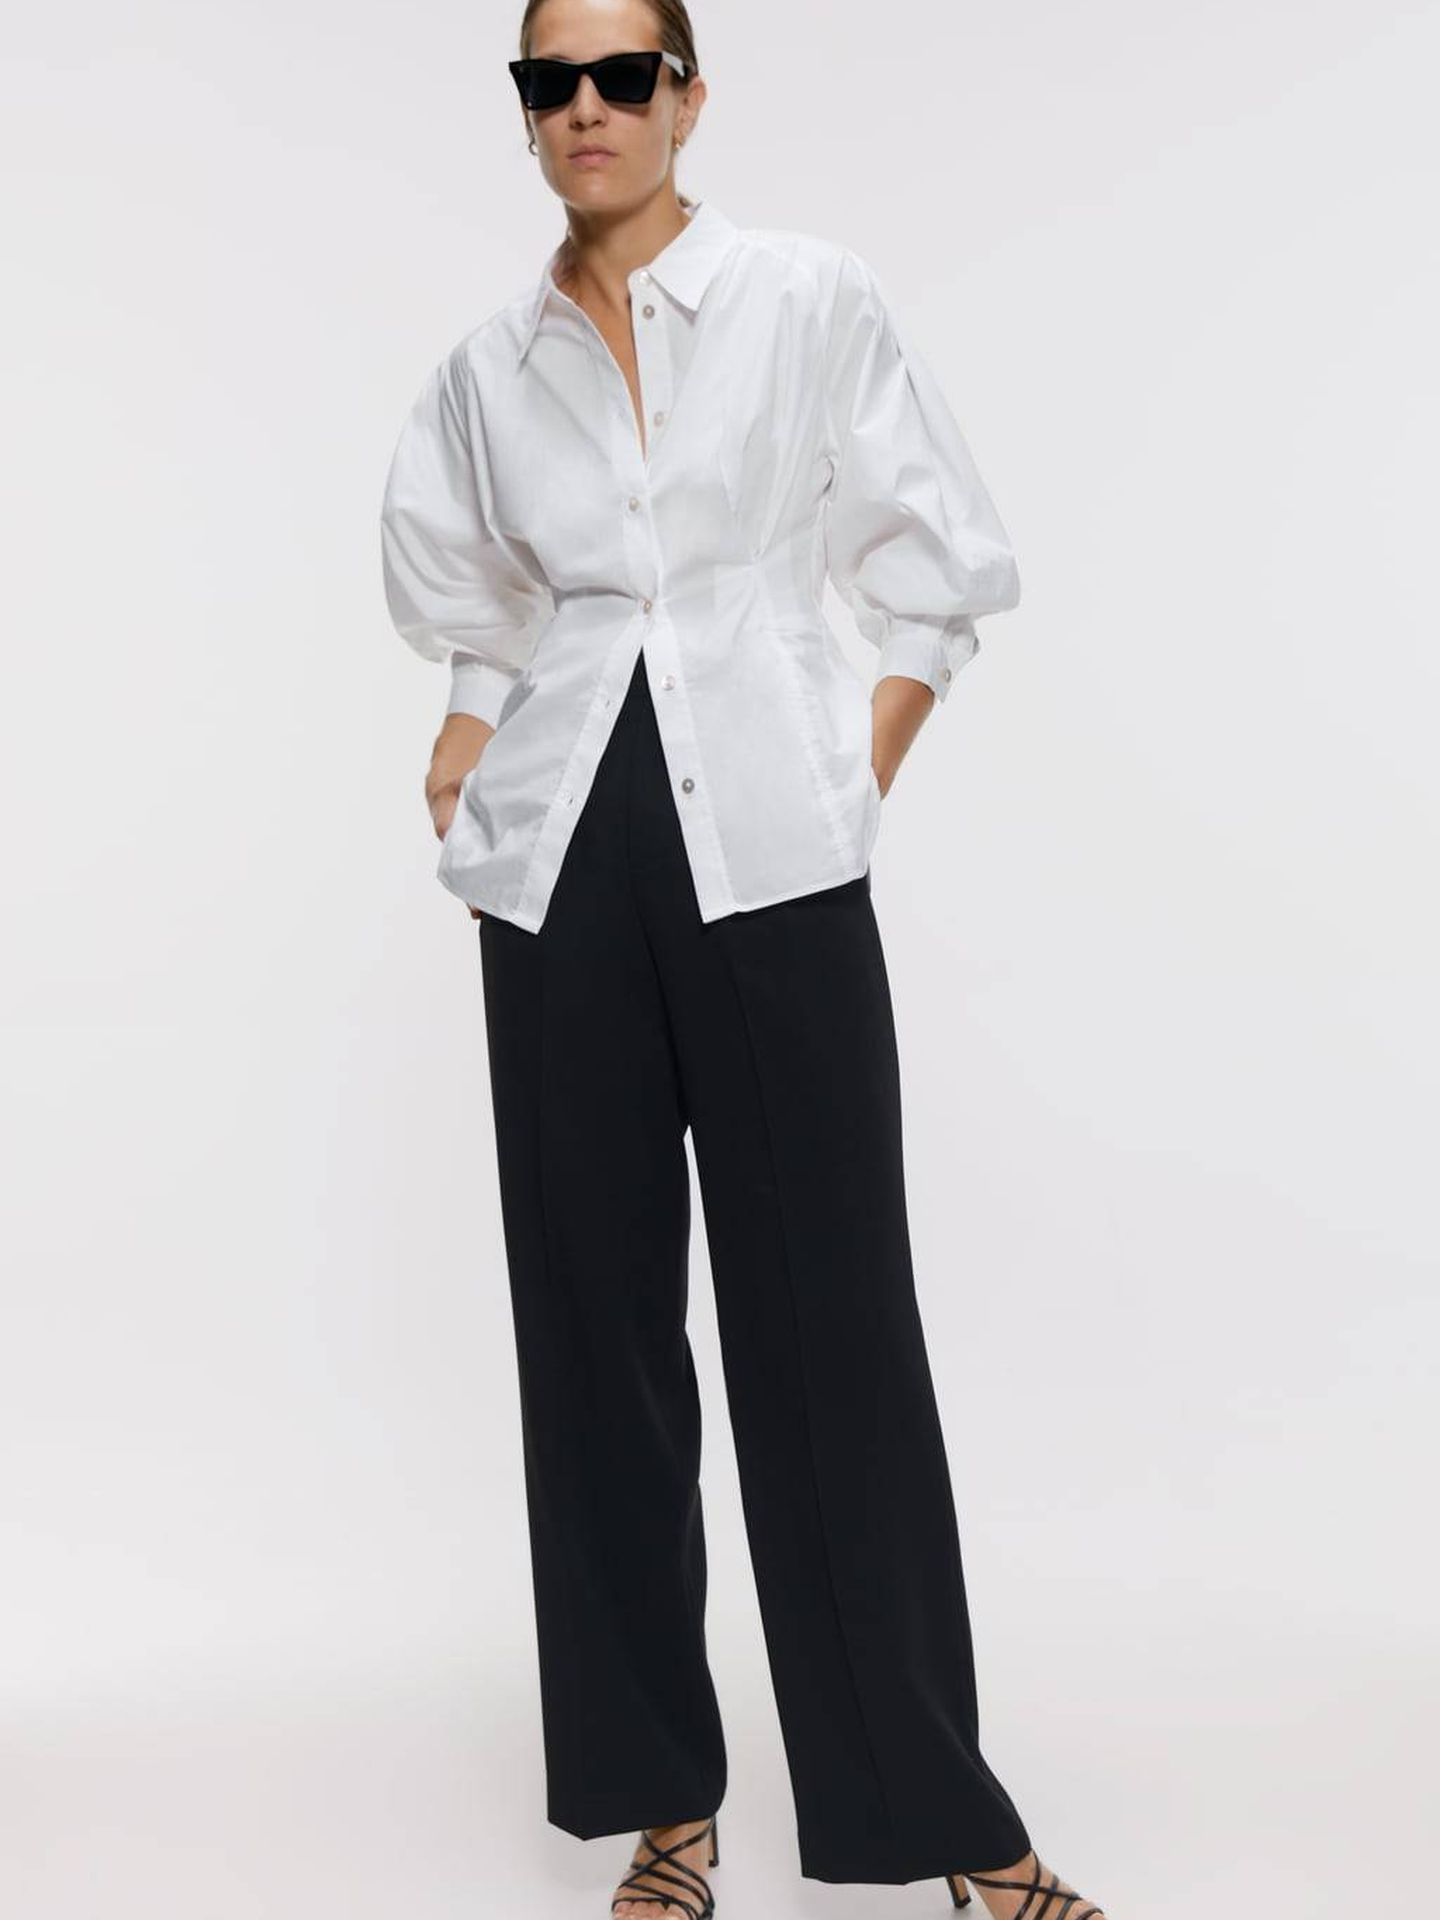 Un total look, camisa blanca (19,95 €) y pantalón negro (39,95 €) de Zara. (Cortesía)